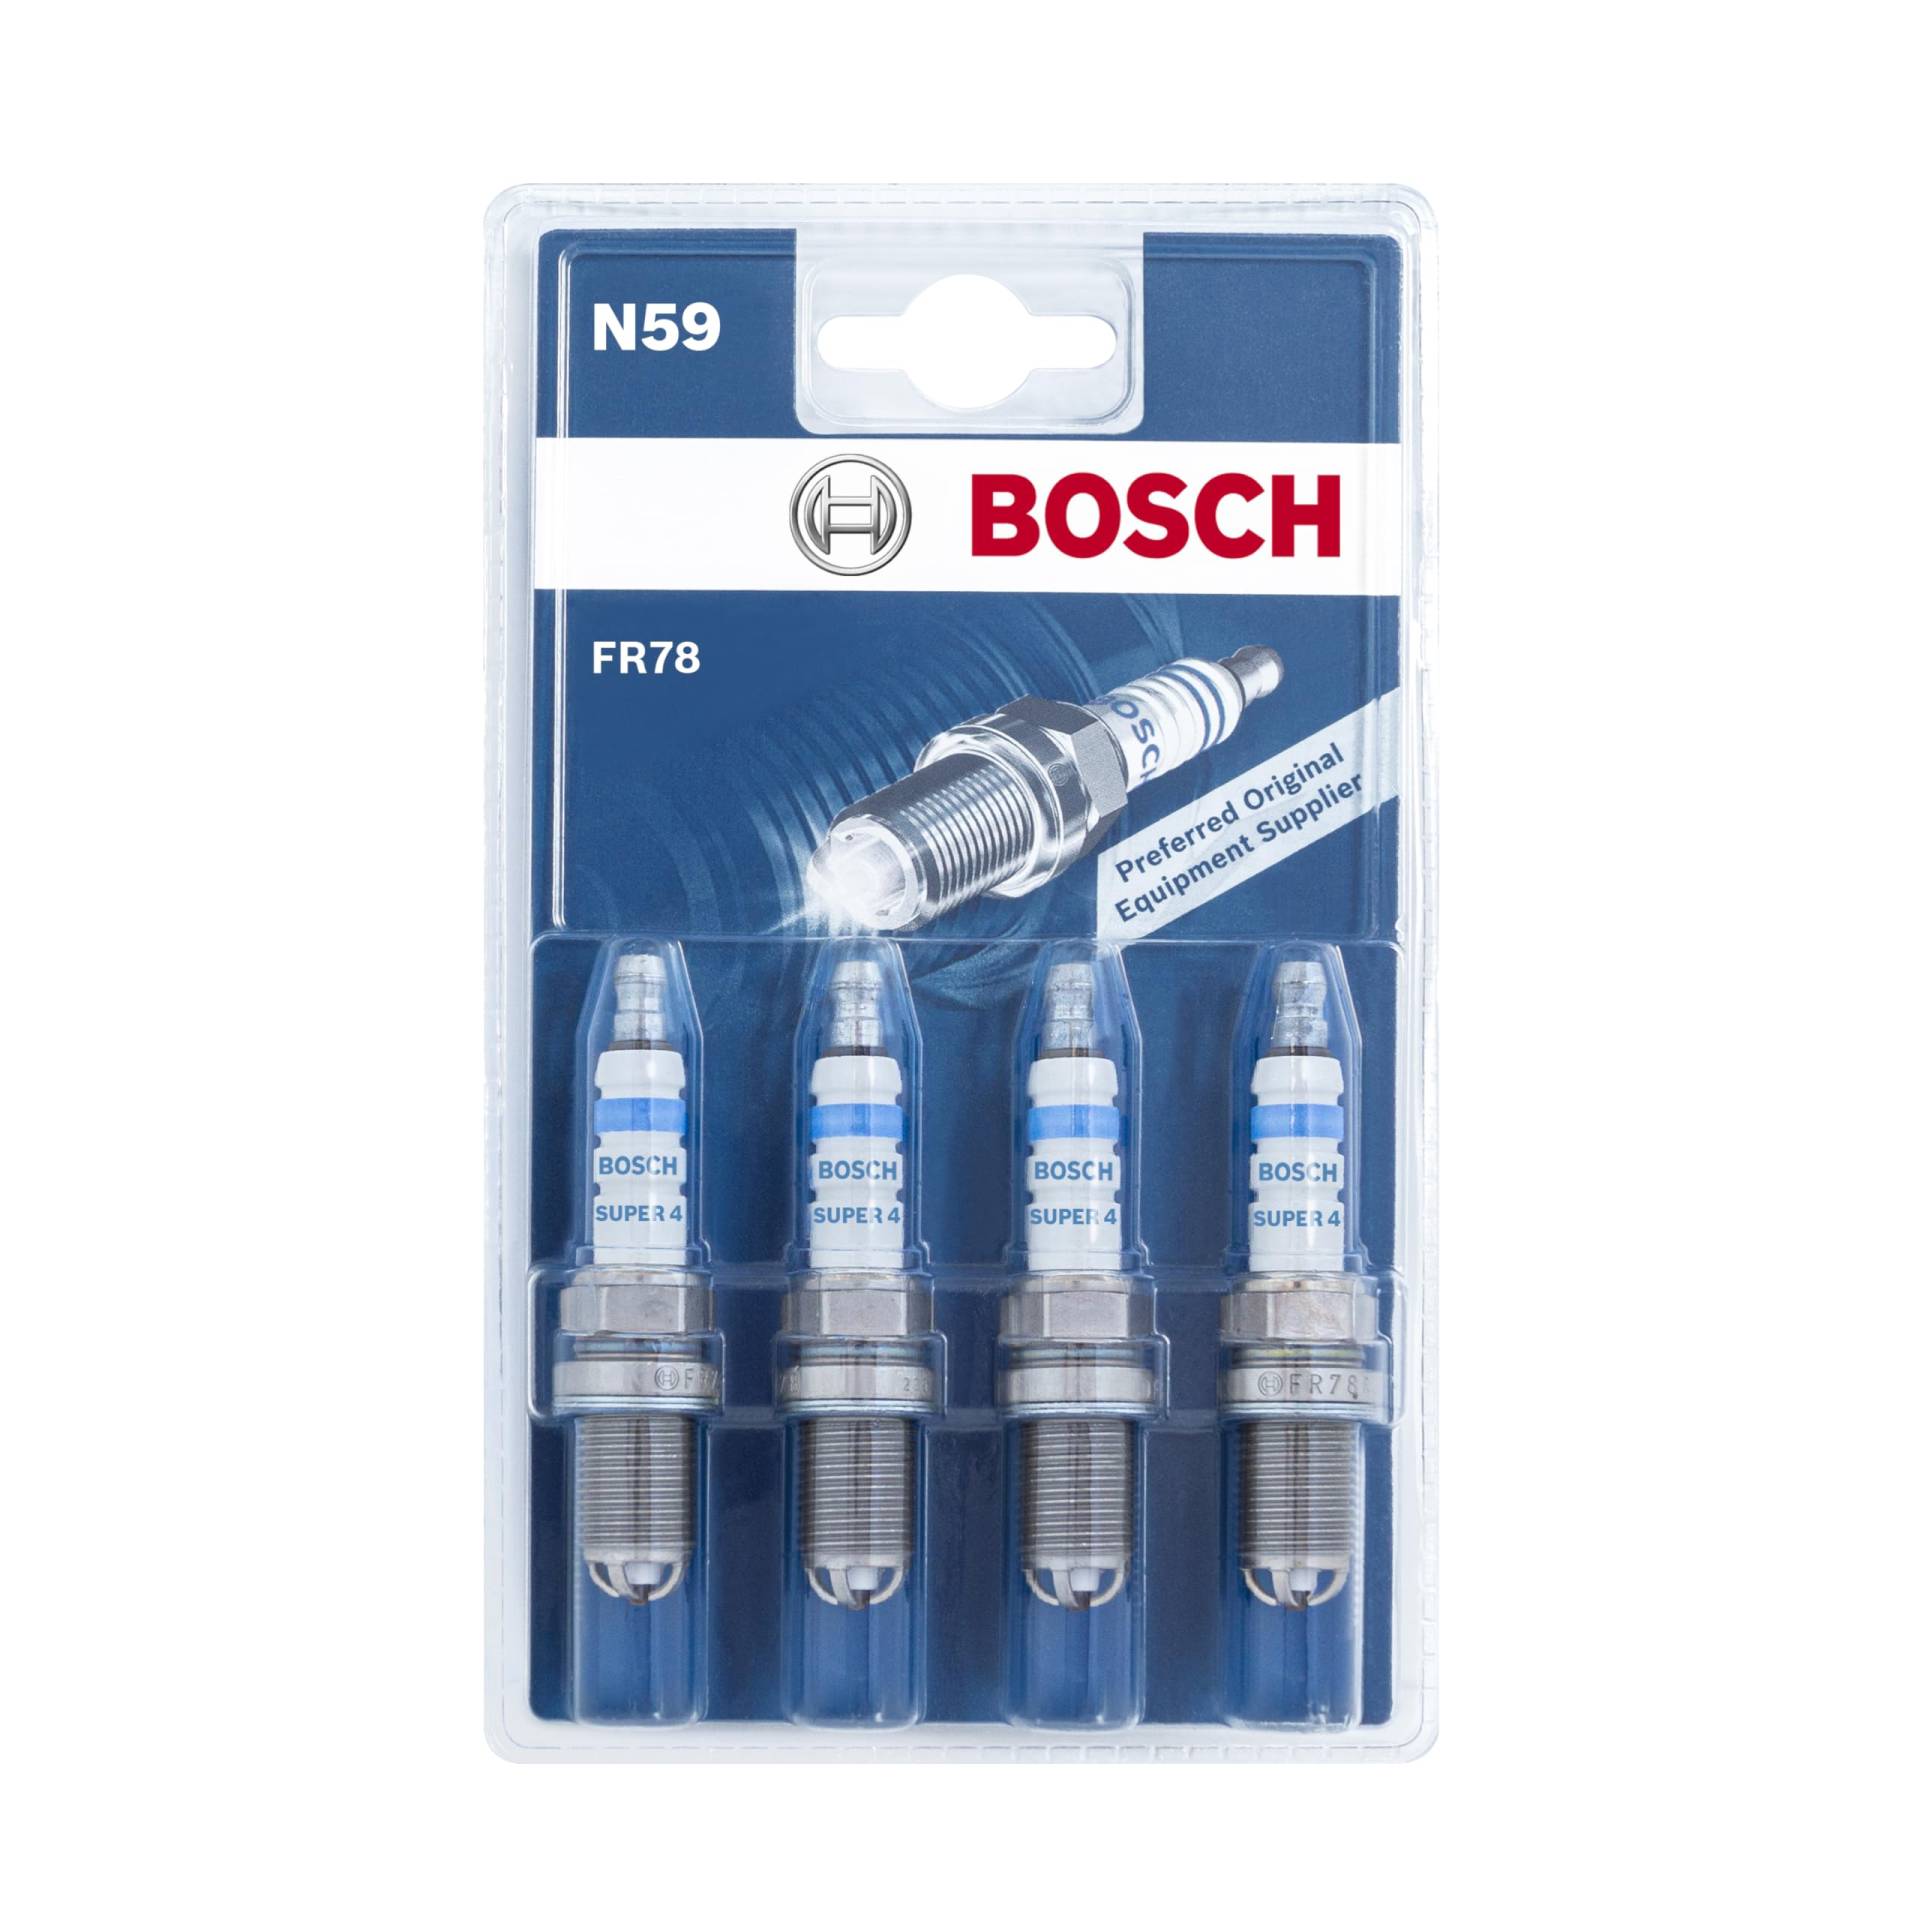 Bosch FR78 (N59) - Zündkerzen Super 4 - 4er Set von Bosch Automotive